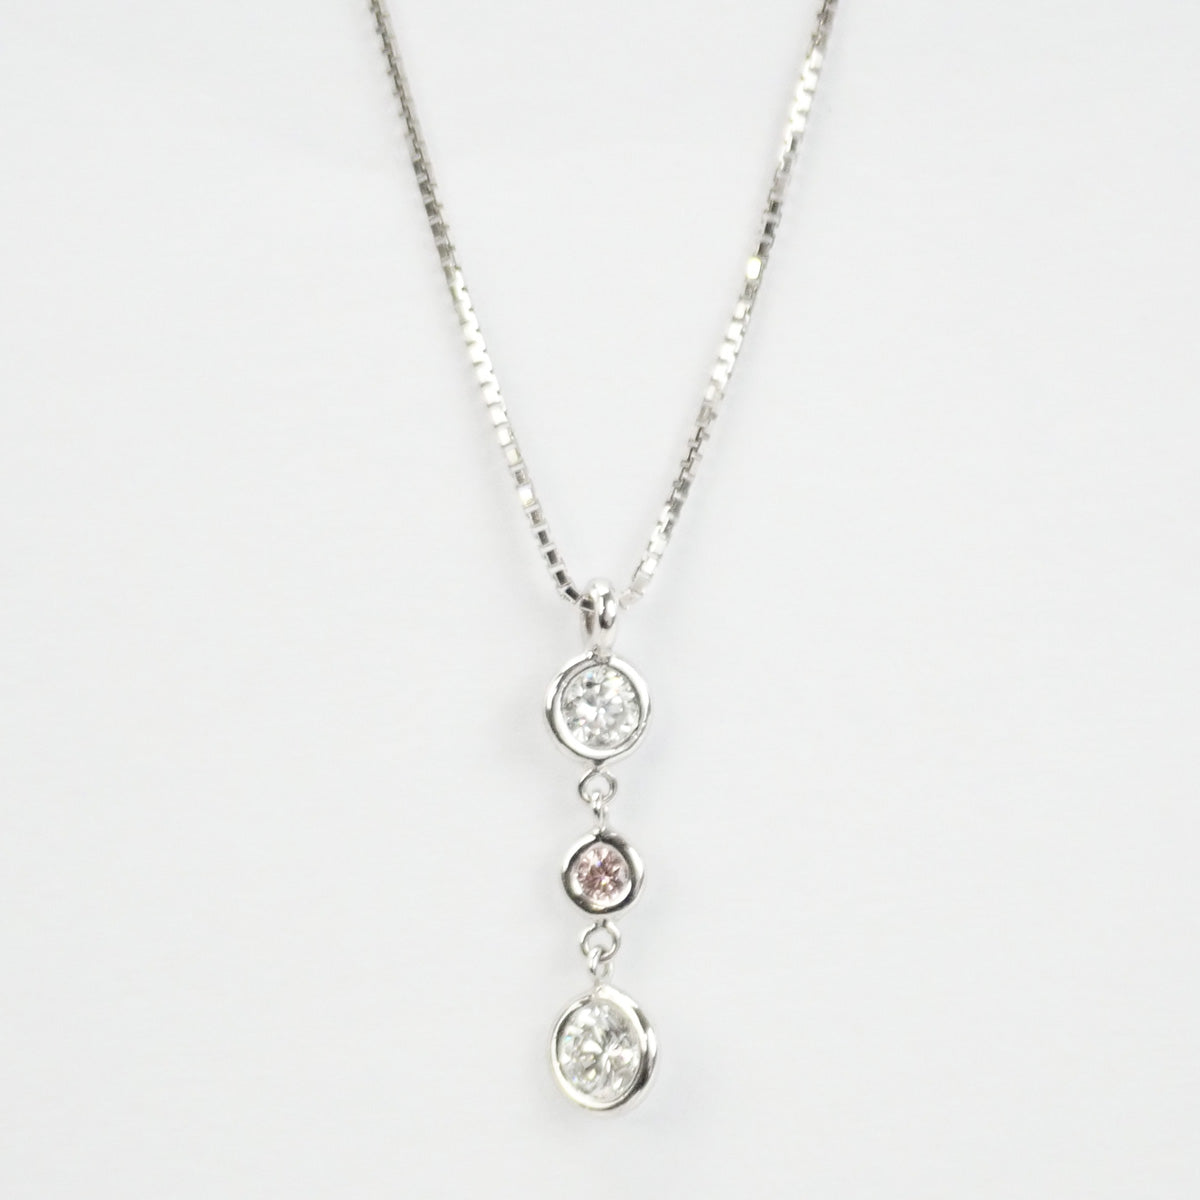 K18WG Diamond Necklace, 3P Diamond, Silver Finish, Ladies (Pre-owned)